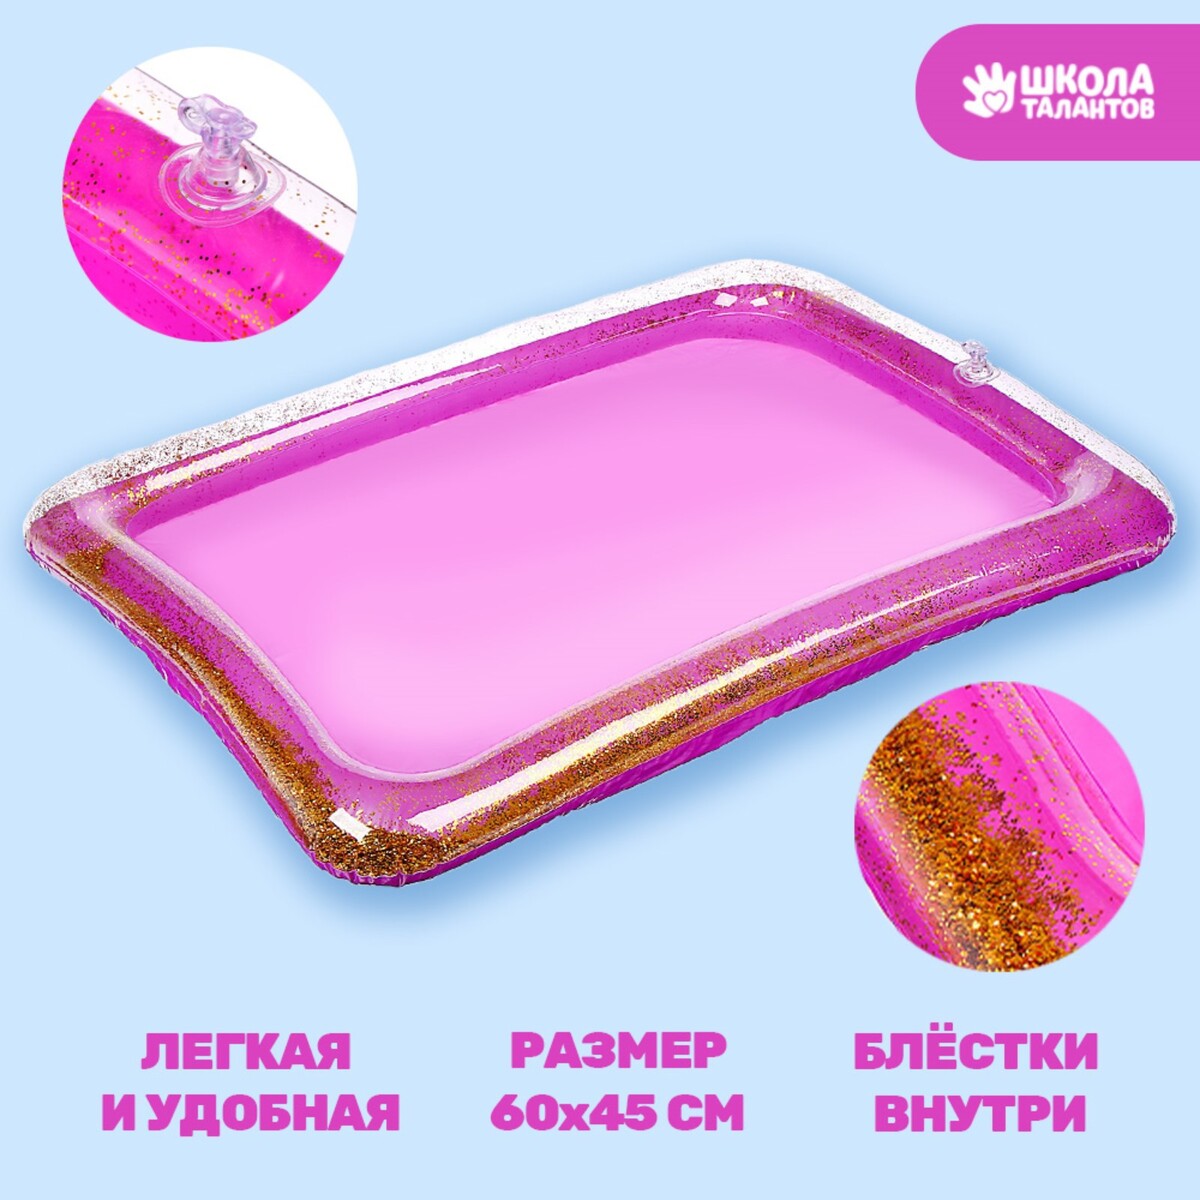 Надувная песочница для детской площадки, с блестками, 60х45 см, цвет сиреневый надувная песочница с блестками 60х45 см ярко розовый